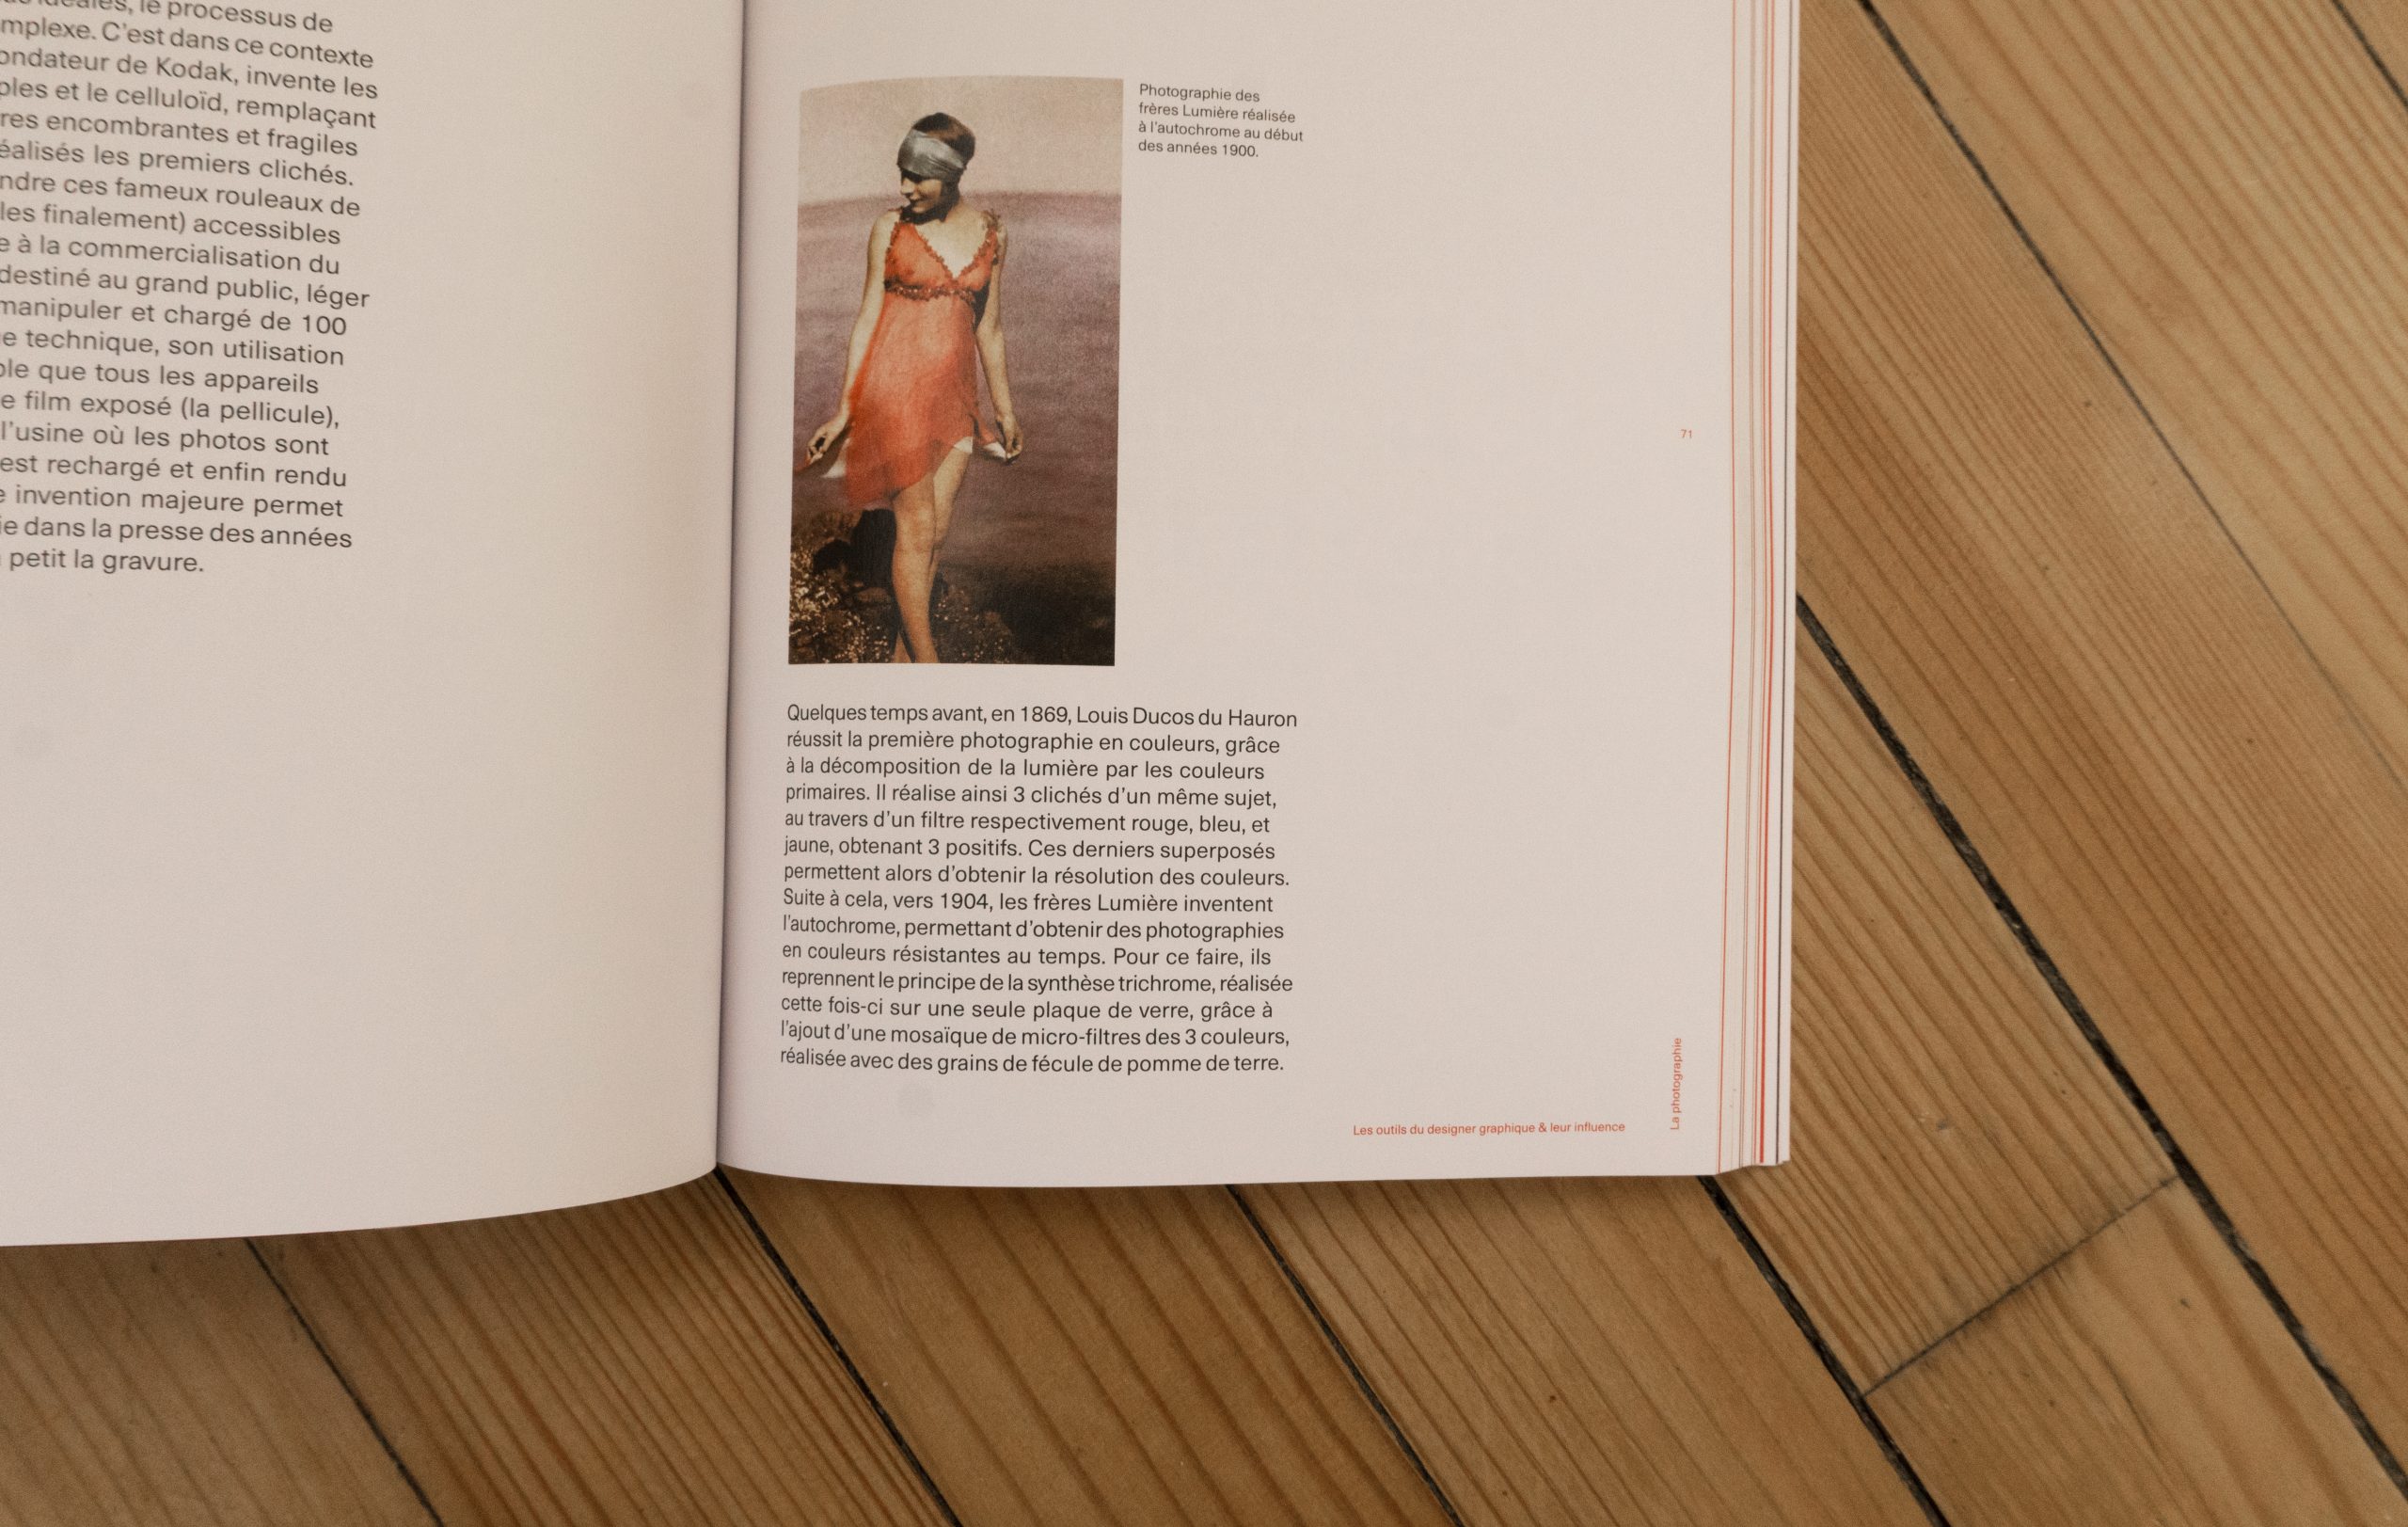 Visuel de l'intérieur du livre montrant en gros plan une des pages du chapitre sur la photographie.